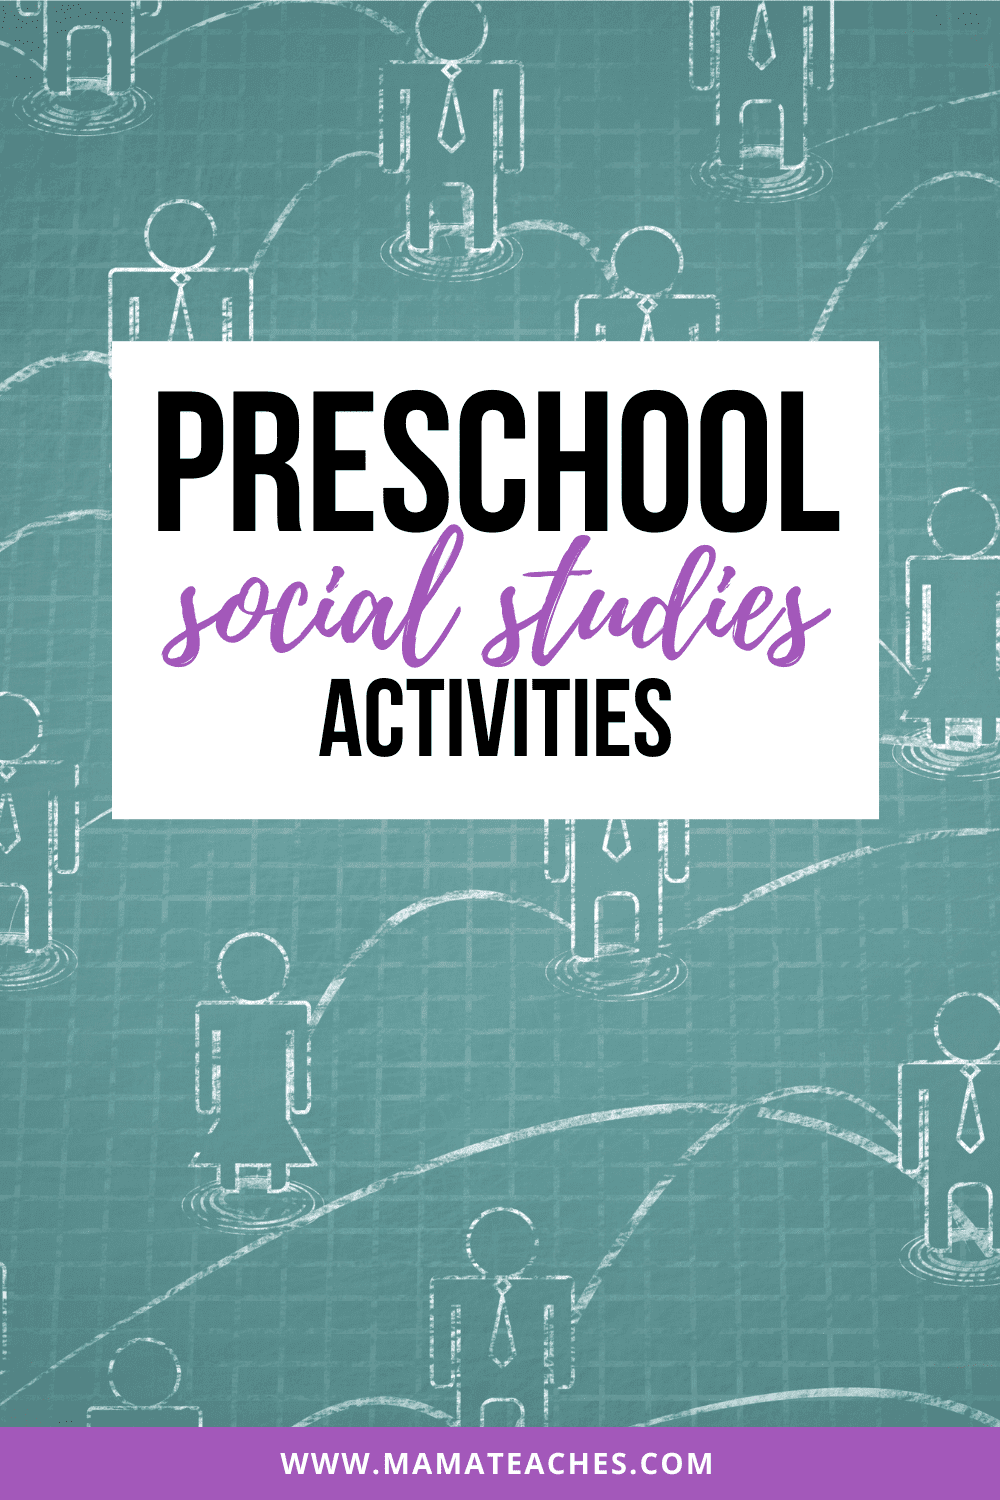 Preschool Social Studies Activities